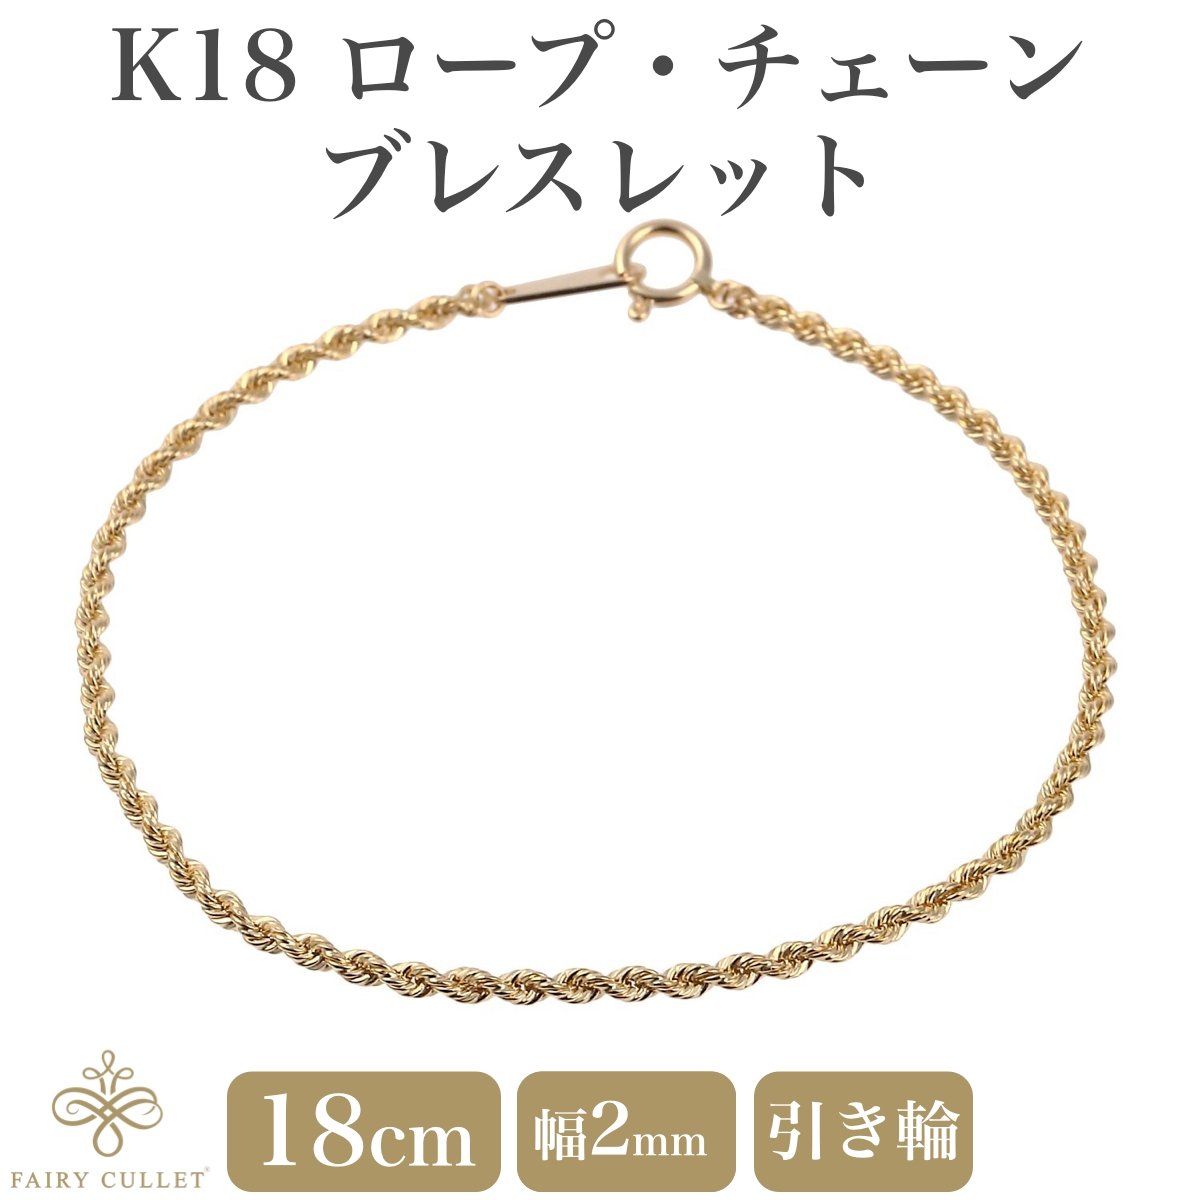 18金ブレスレット K18 ロープ・チェーン 幅2mm 長さ18cm - 喜平 